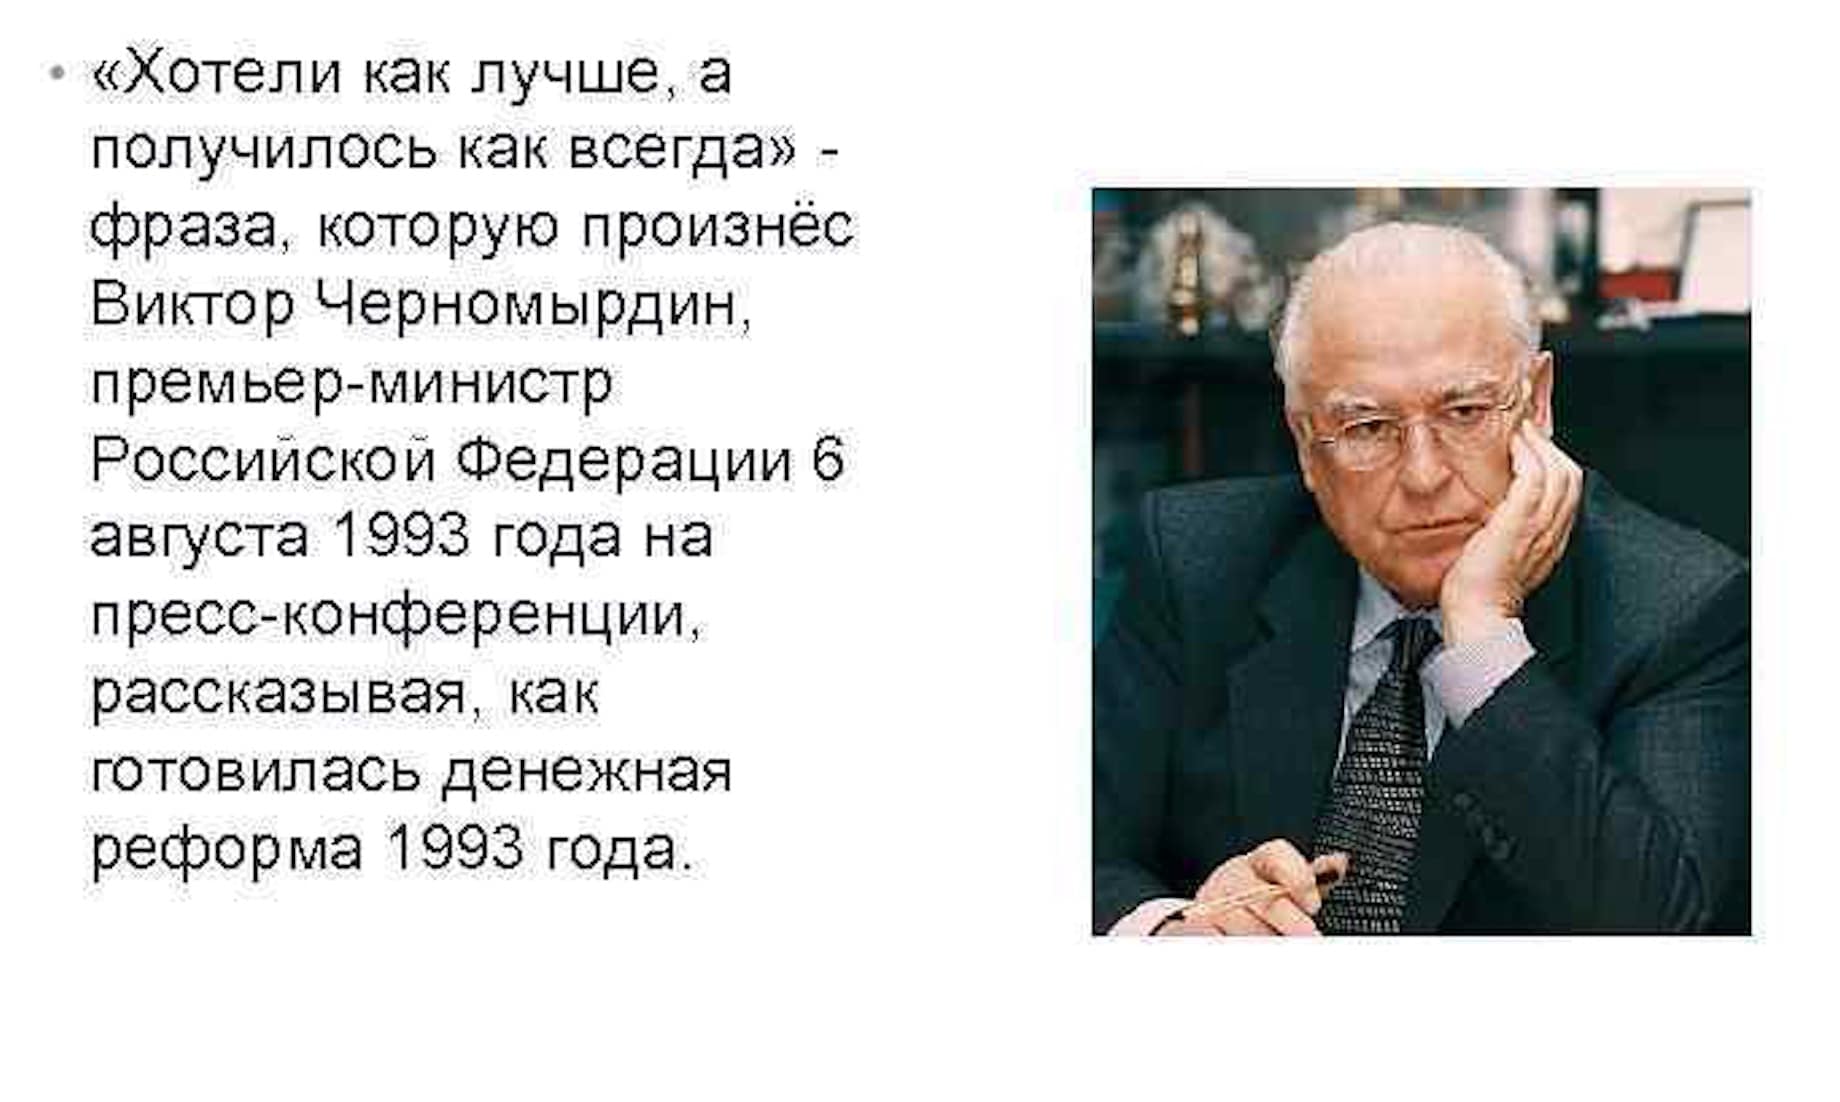 Произнес остановившись. Черномырдин 1993. Правительство в. Черномырдина (1993-1998),. Денежная реформа 1993.